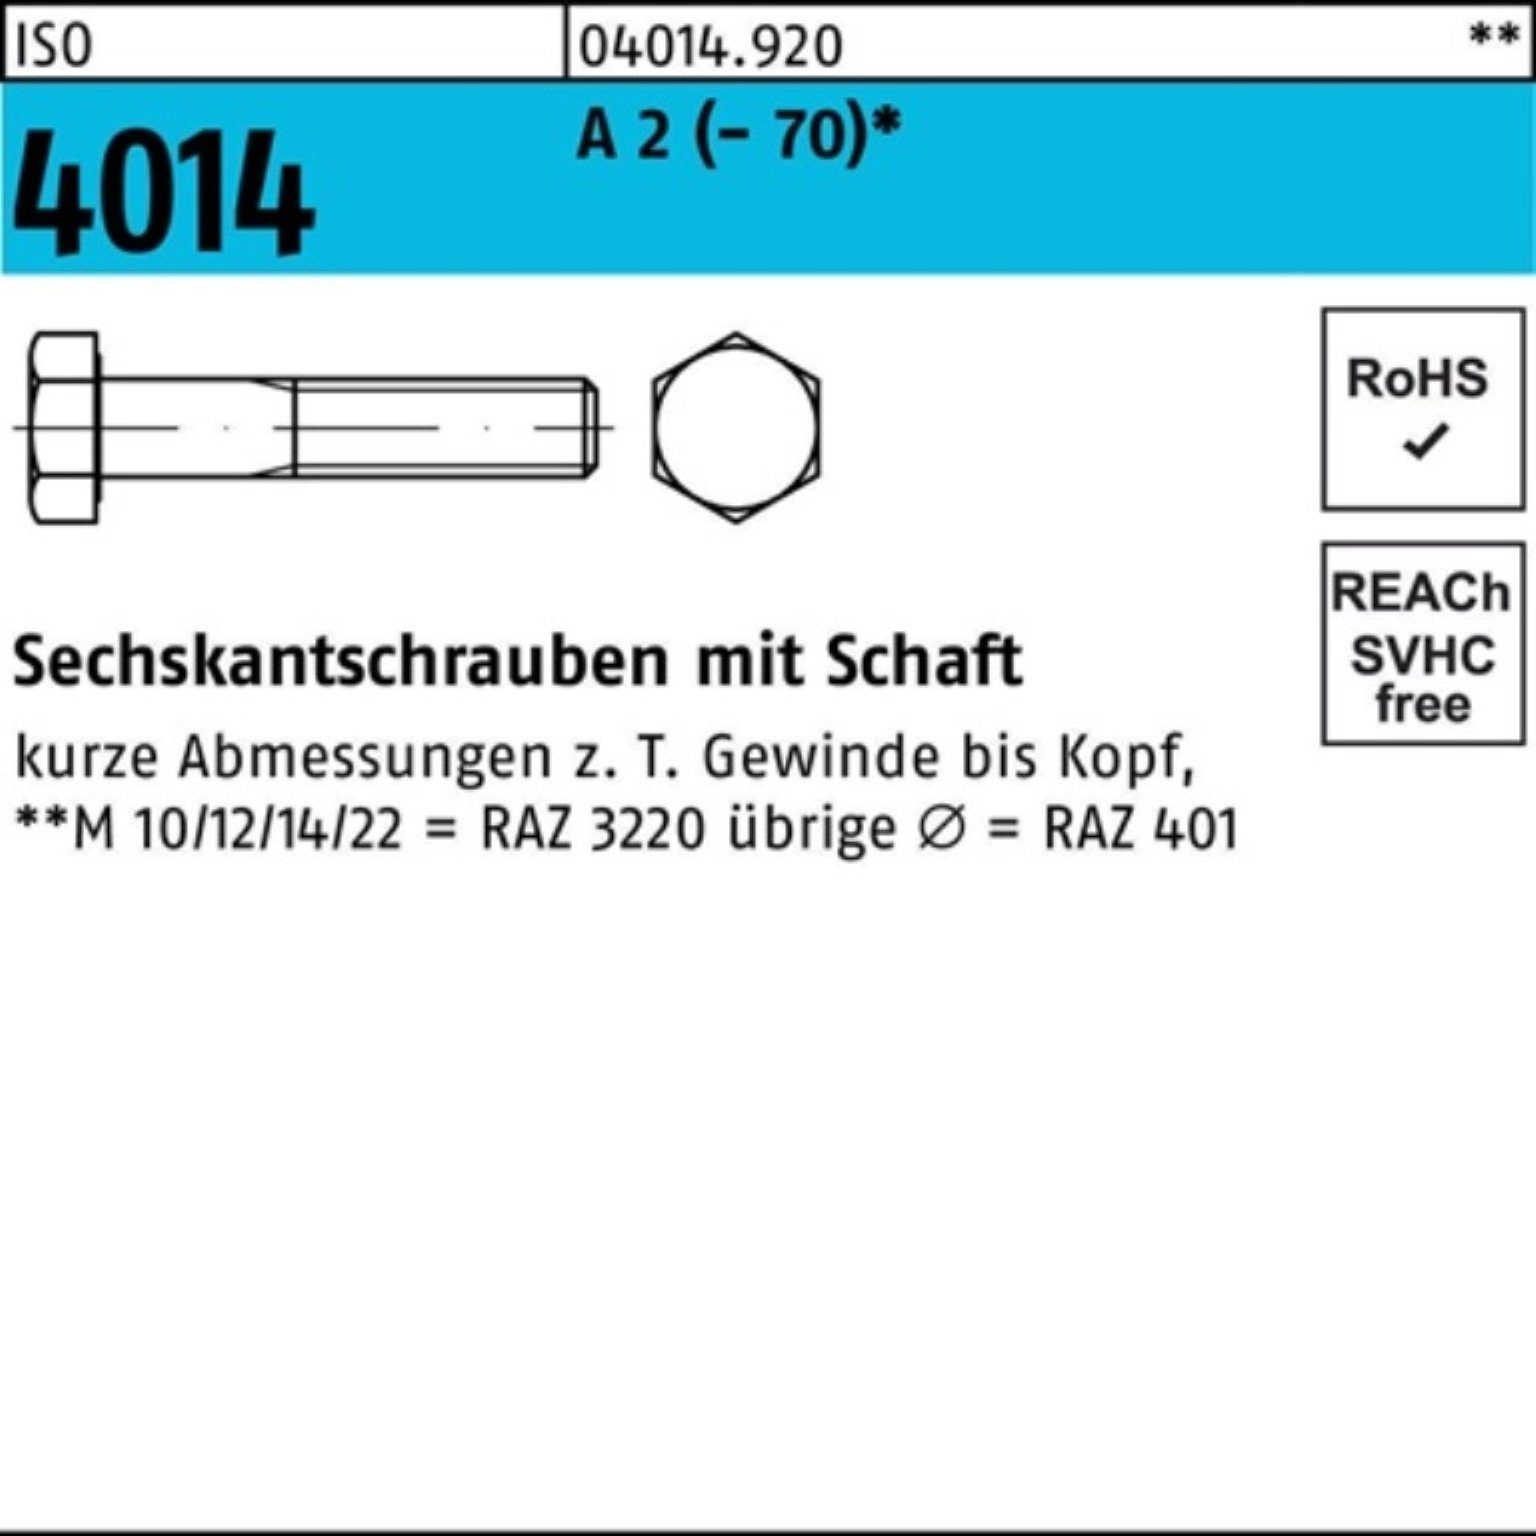 Bufab Sechskantschraube 100er Pack Sechskantschraube ISO 4014 Schaft M8x 160 A 2 (70) 25 St